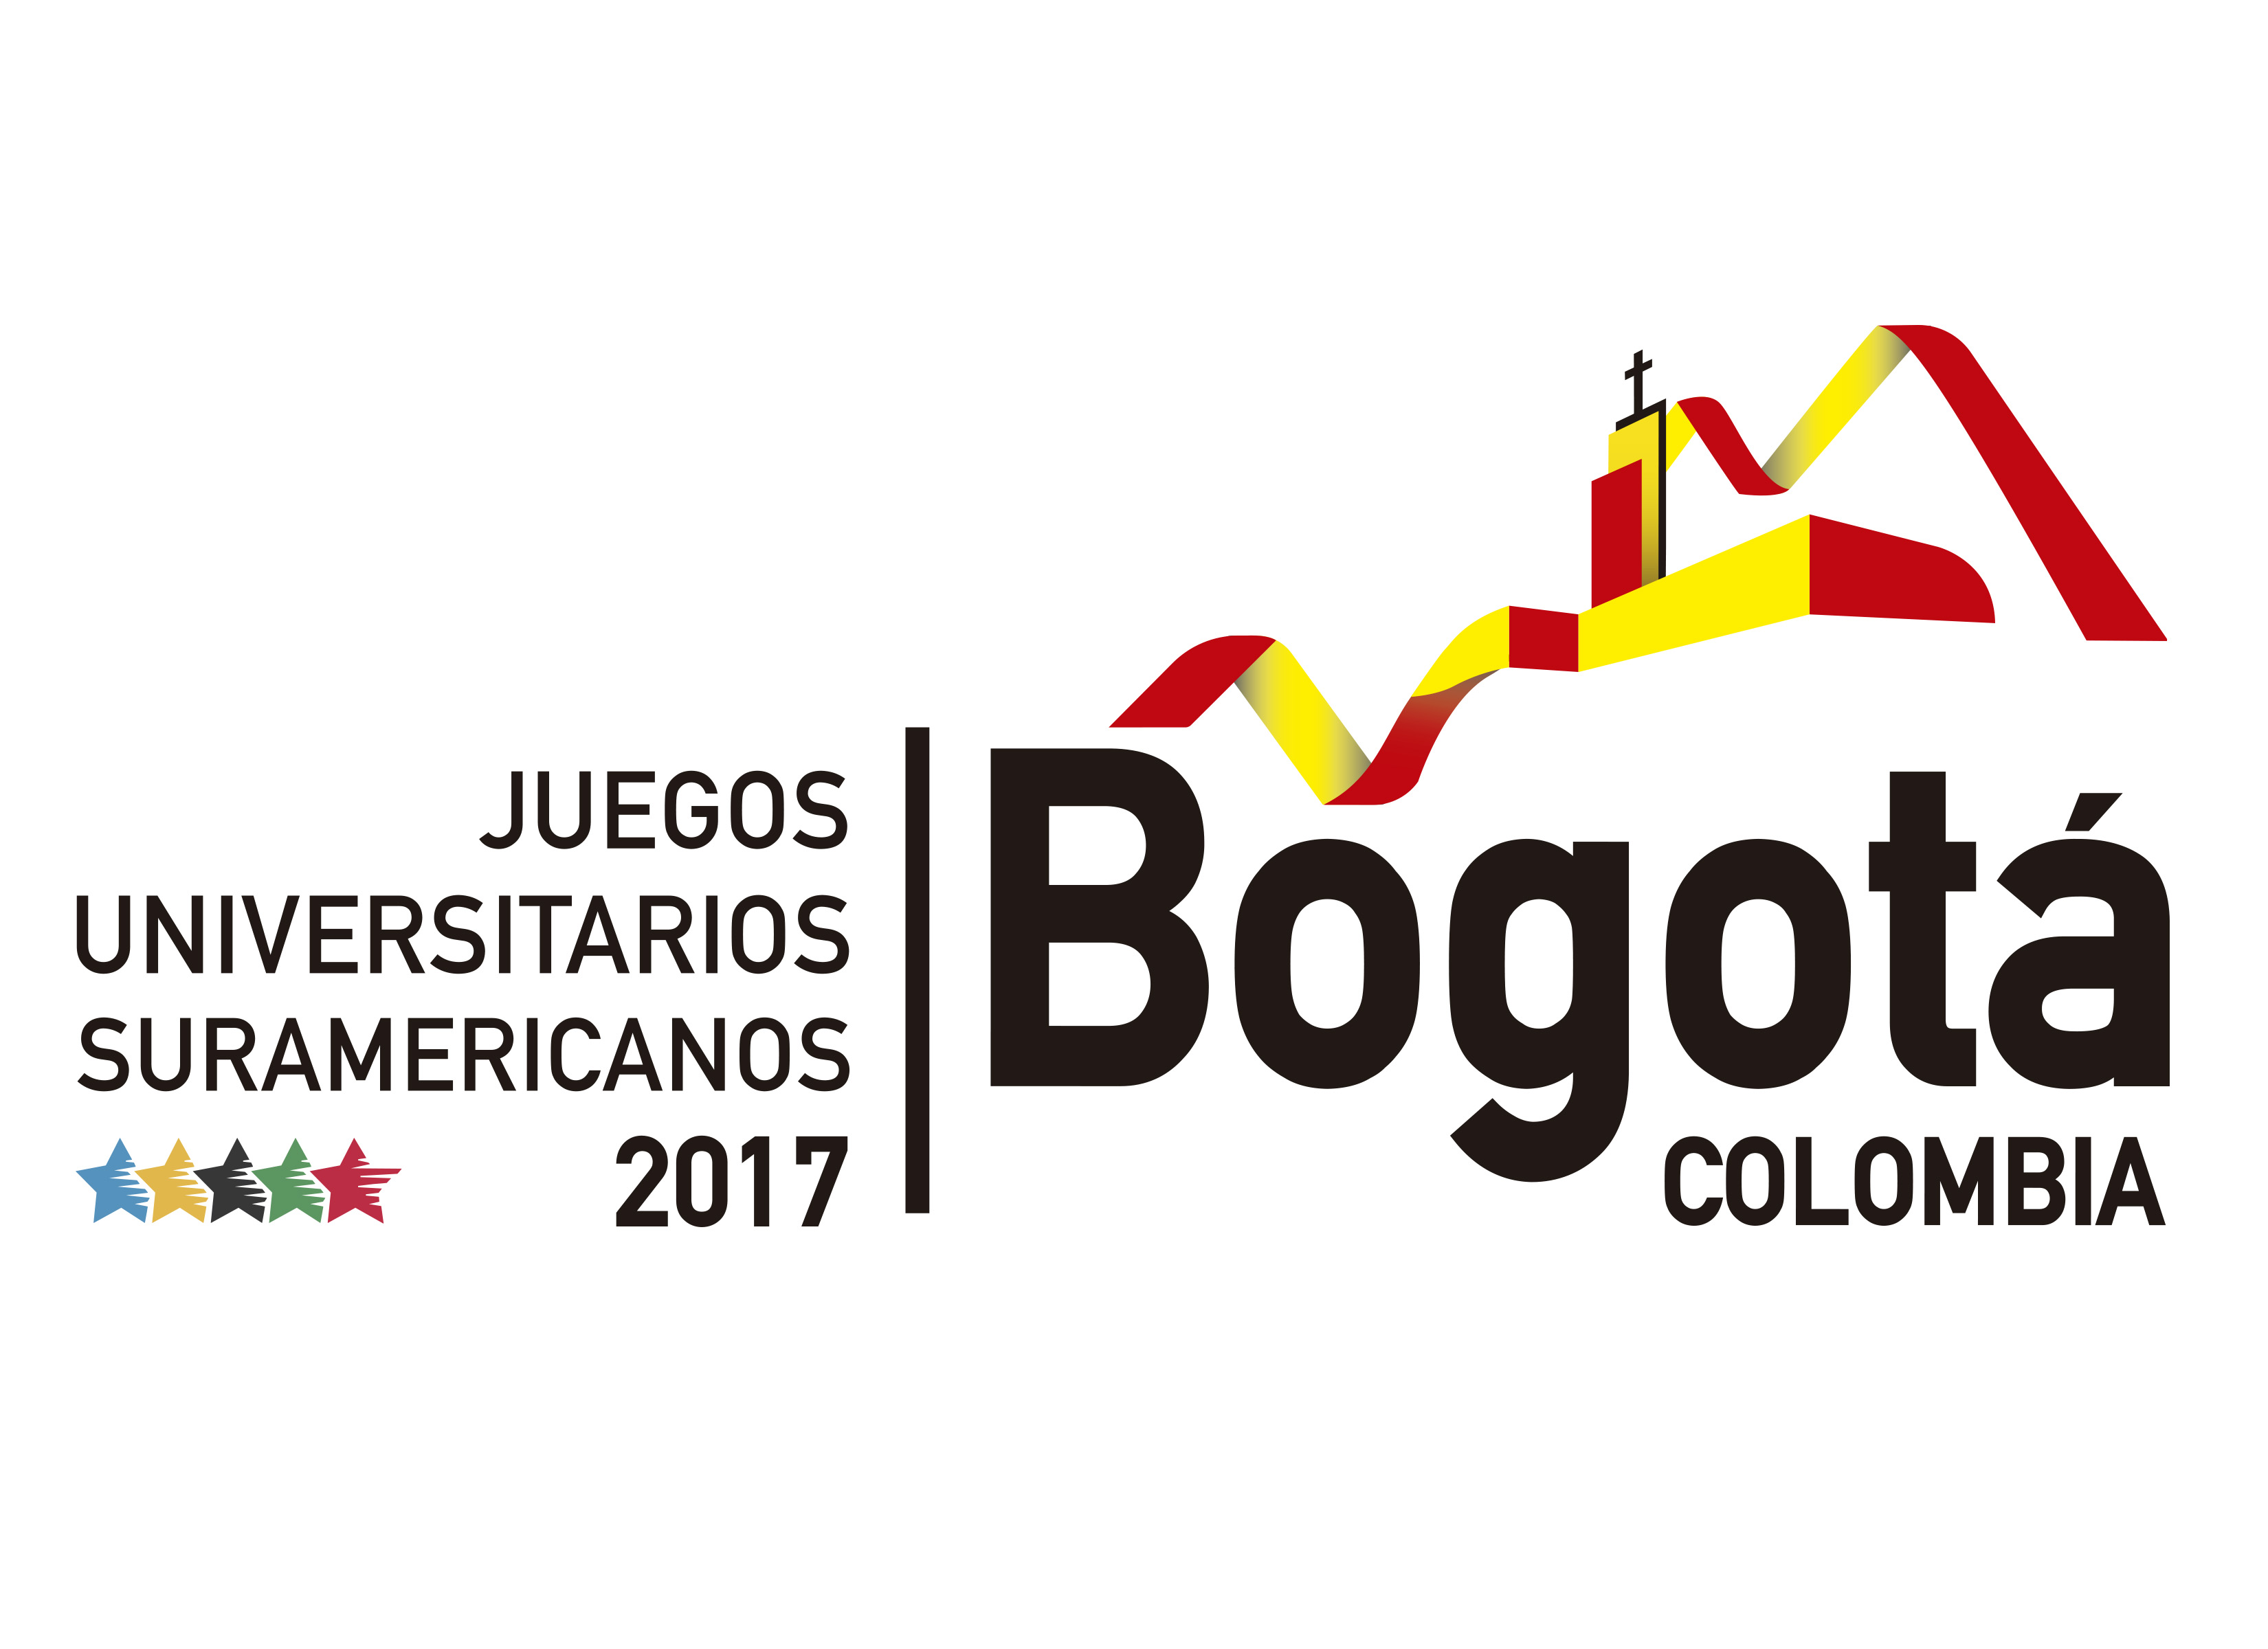 Juegos Universitarios Suramericanos Bogotá 2017